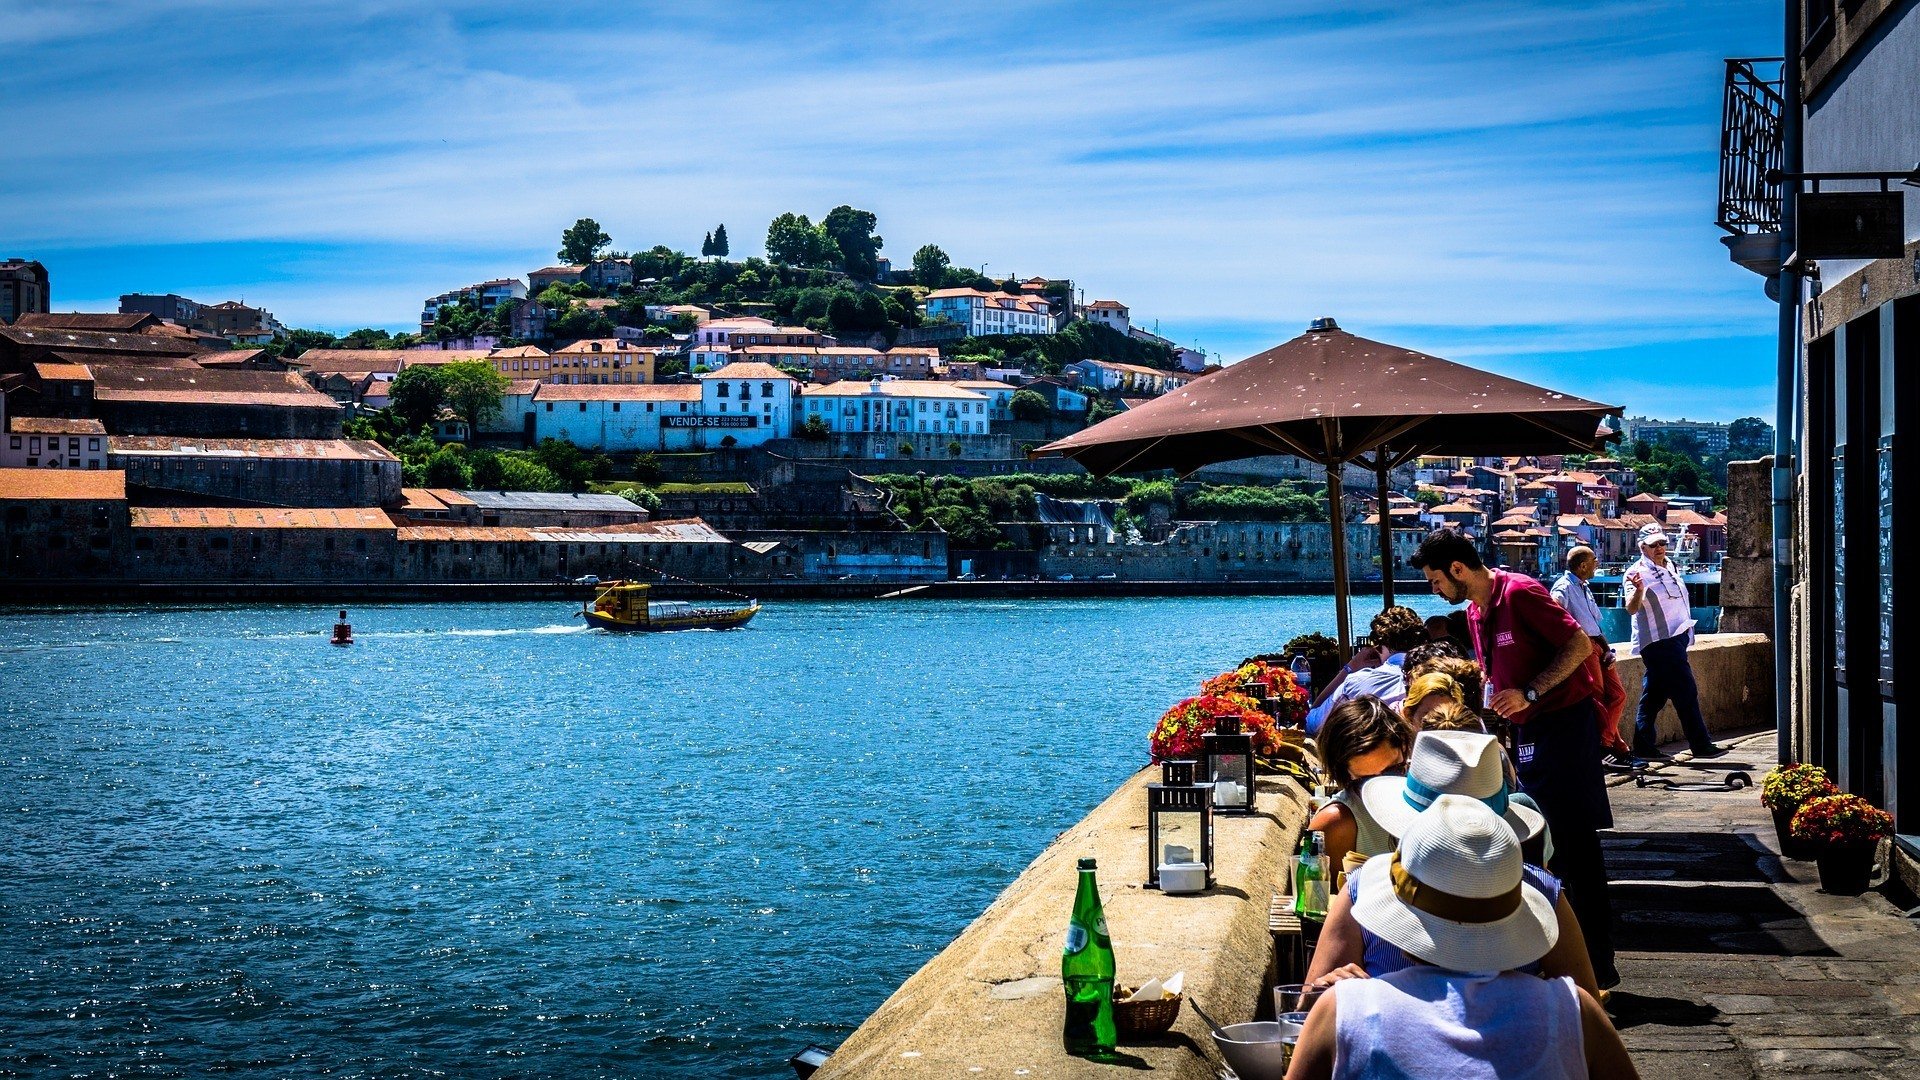 Best Hostels in Porto